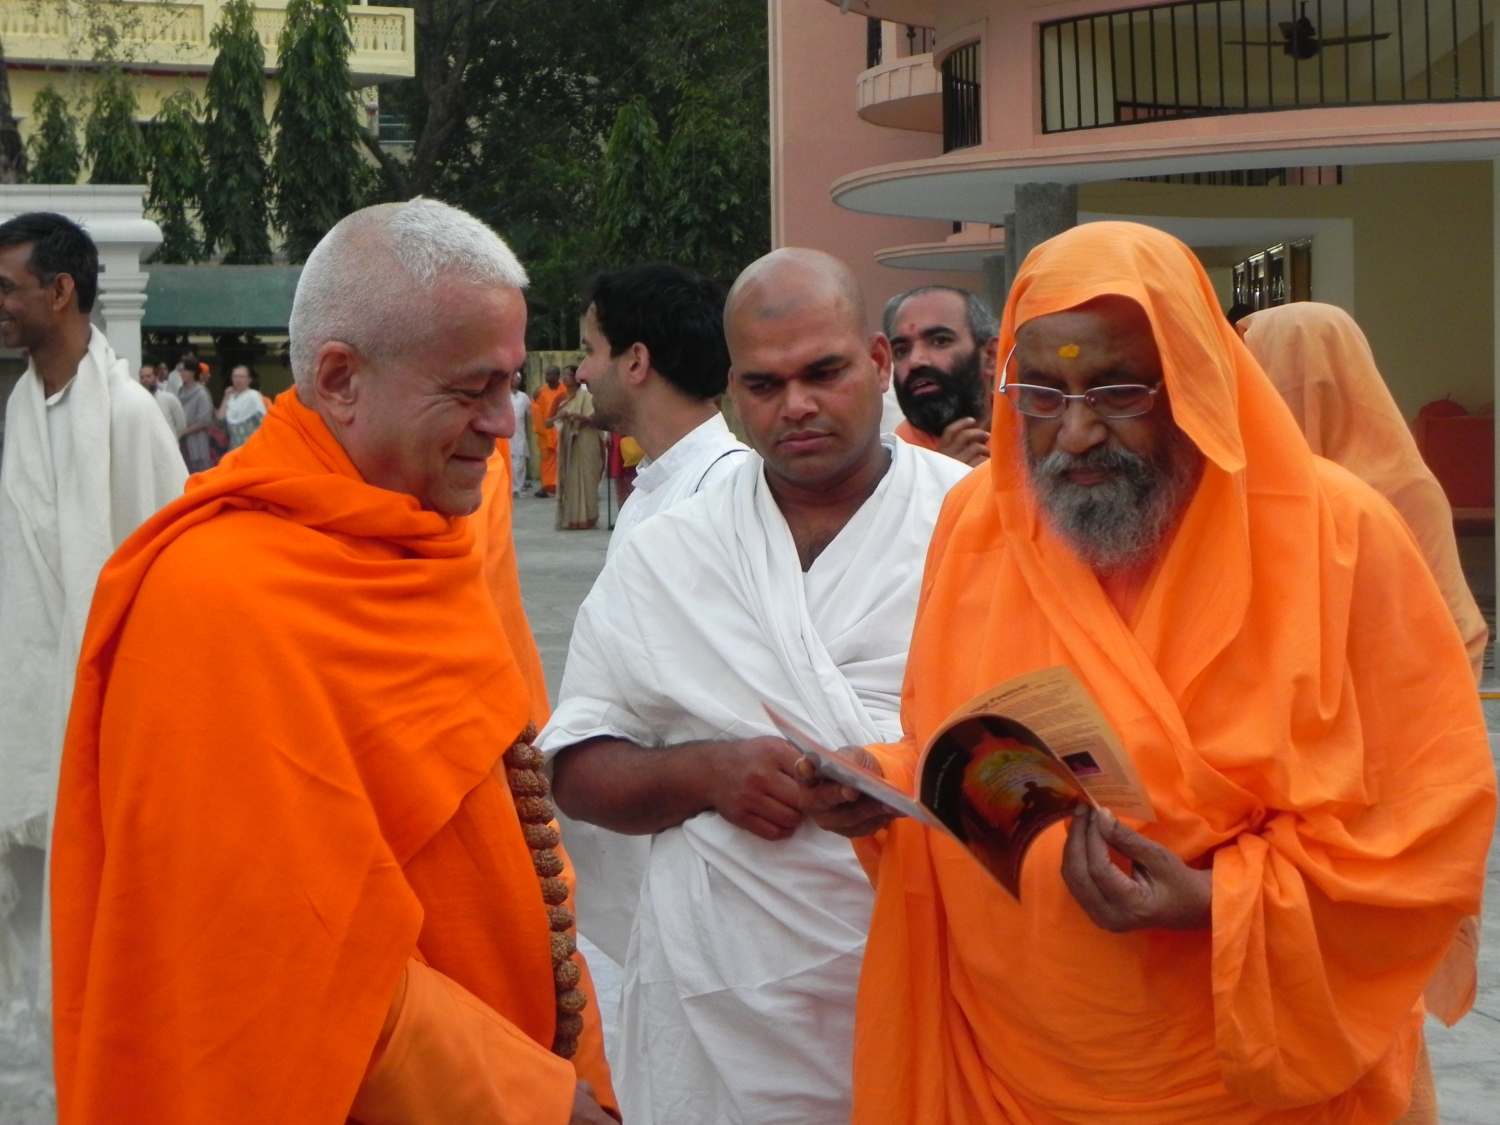 Encontro de H.H. Jagat Guru Amrta Sūryānanda Mahā Rāja com H.H. Pujya Svámin Dayánanda Sarasvatí - rshikesh, Índia - 2013, Março